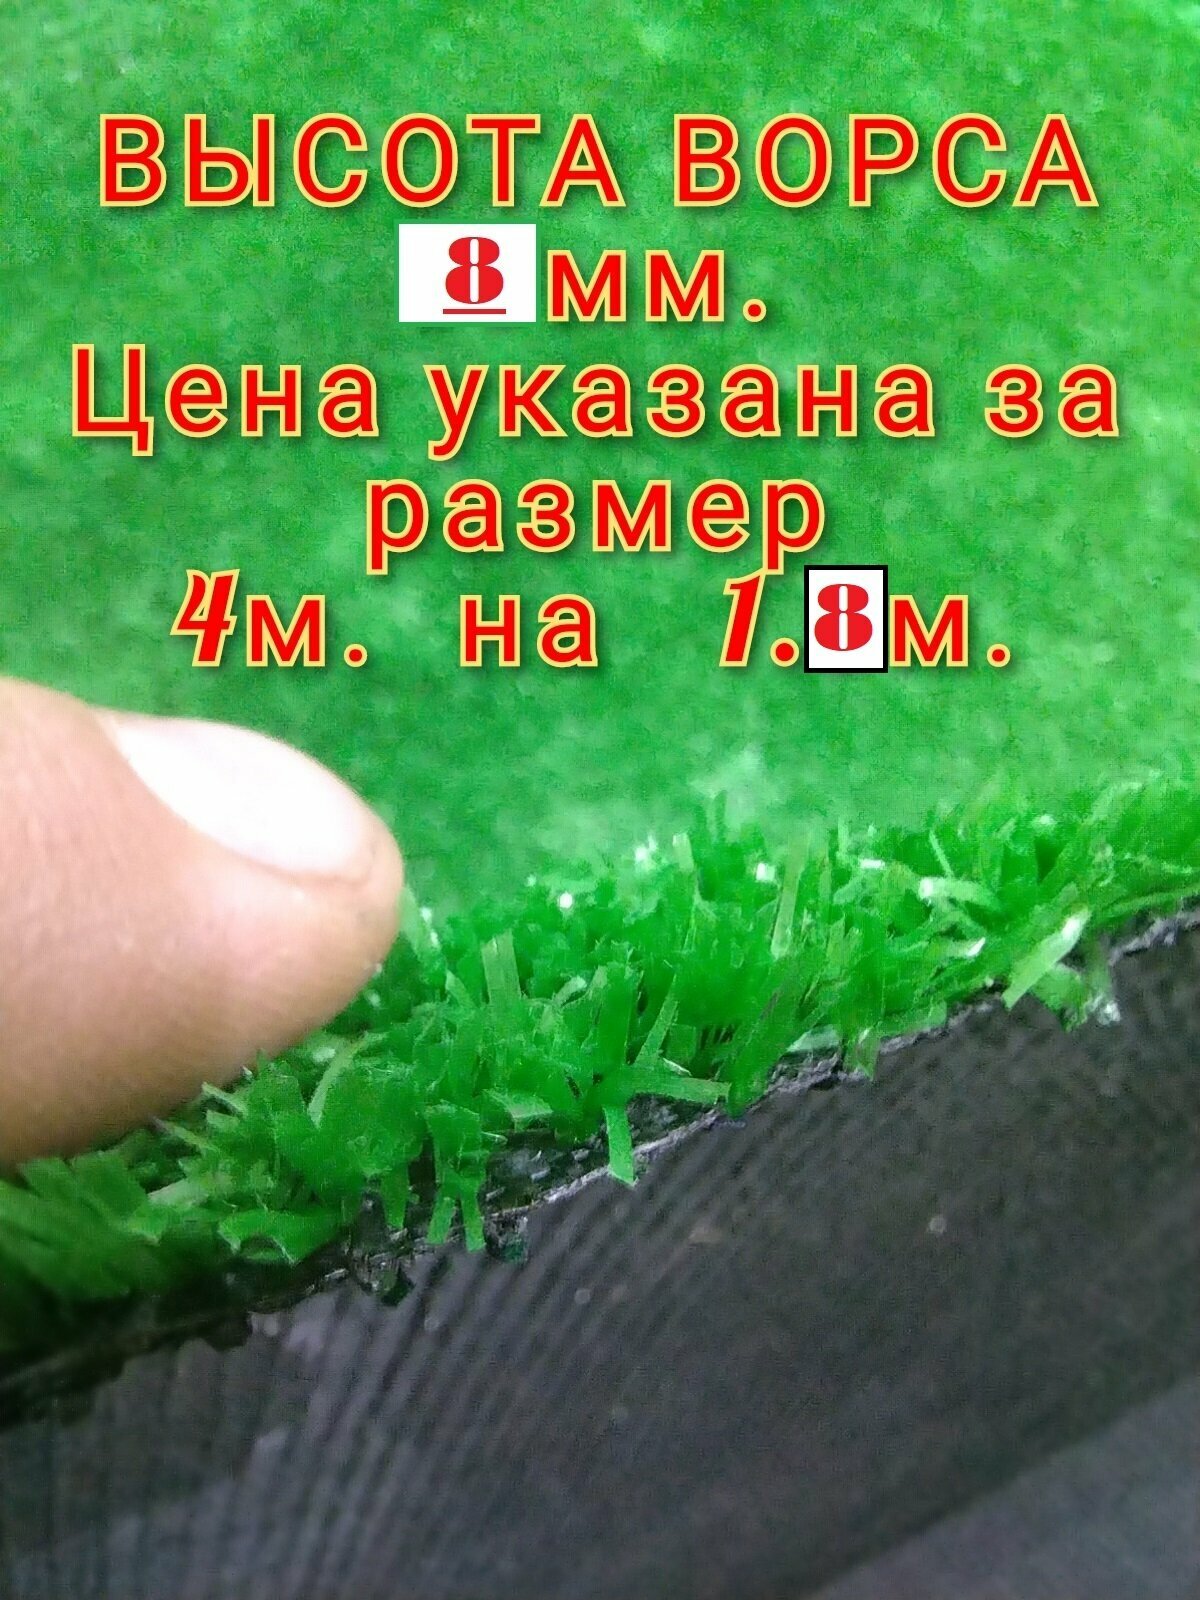 Искусственный газон 4 на 1.8 (высота ворса 8мм) общая толщина 10мм. Искусственная трава